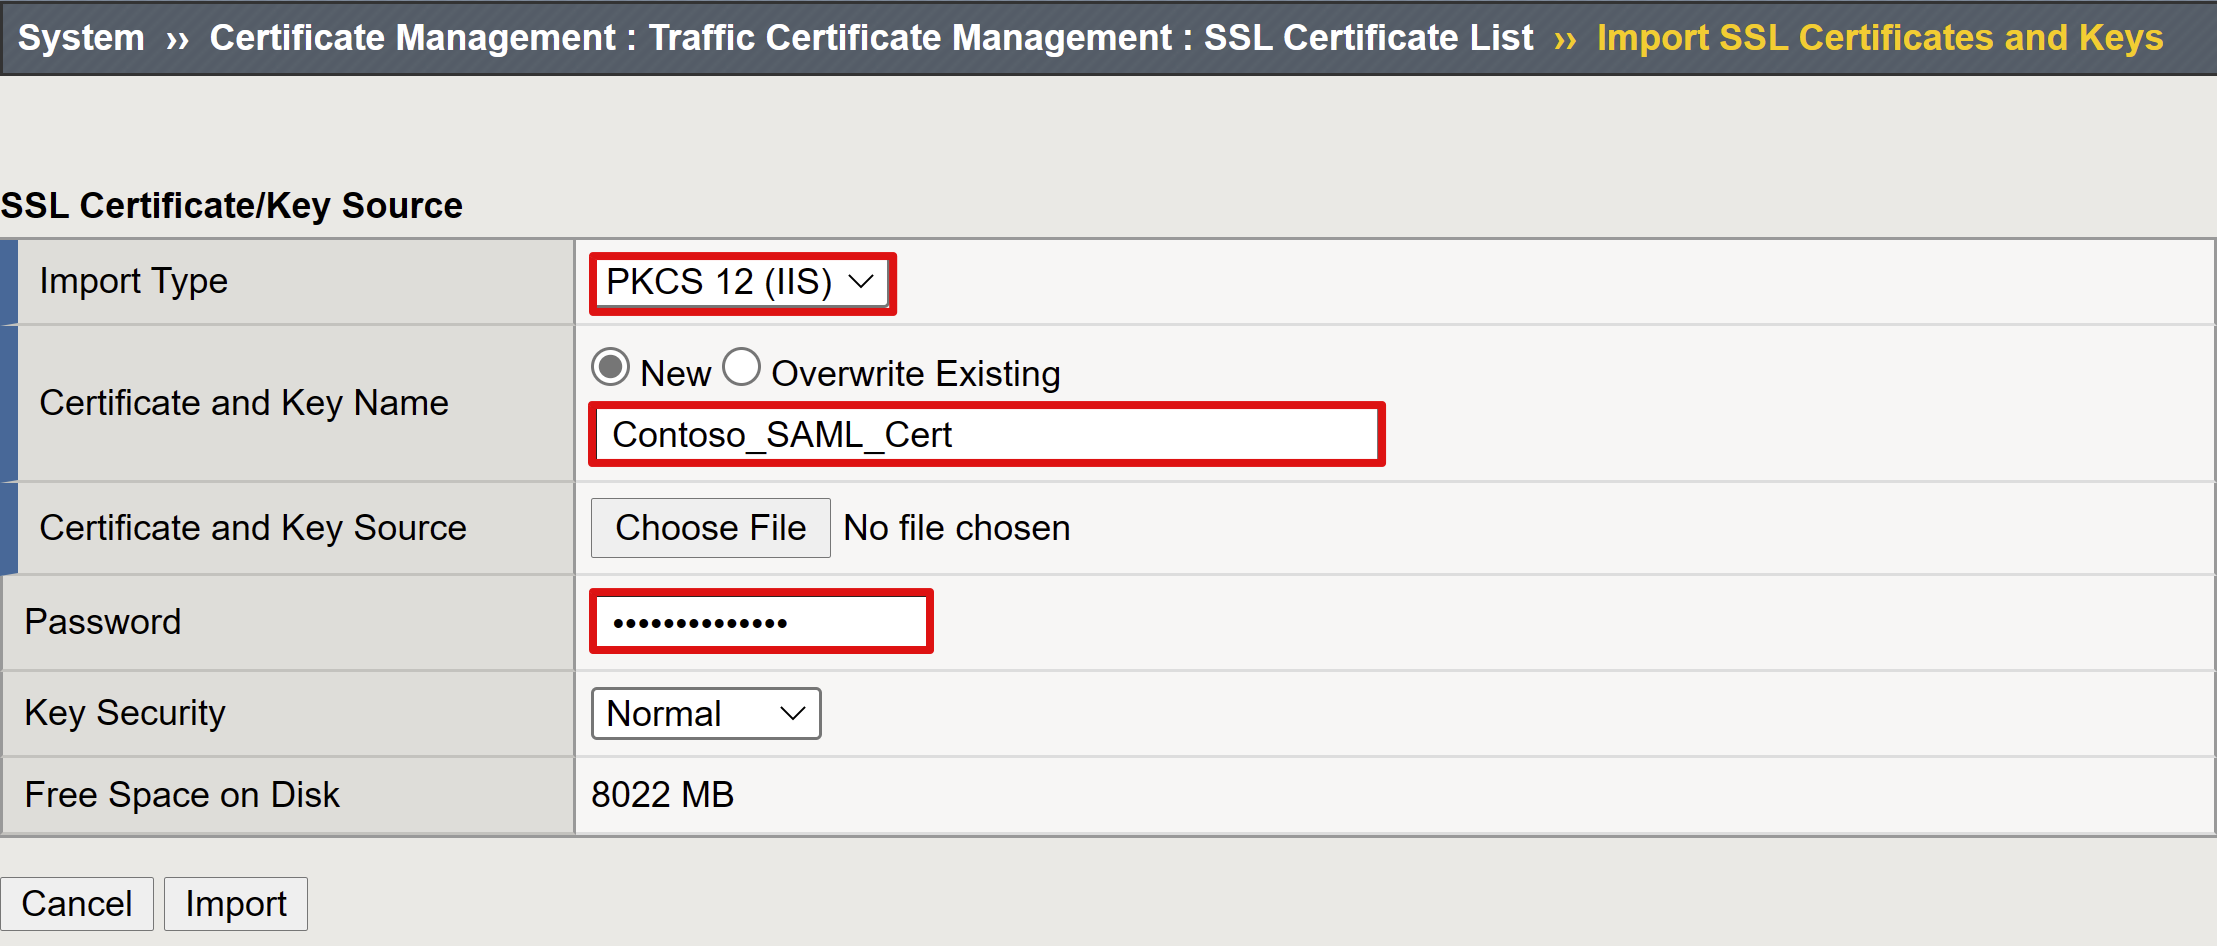 Captura de tela das opções e seleções do certificado SSL e da Fonte de Chave.